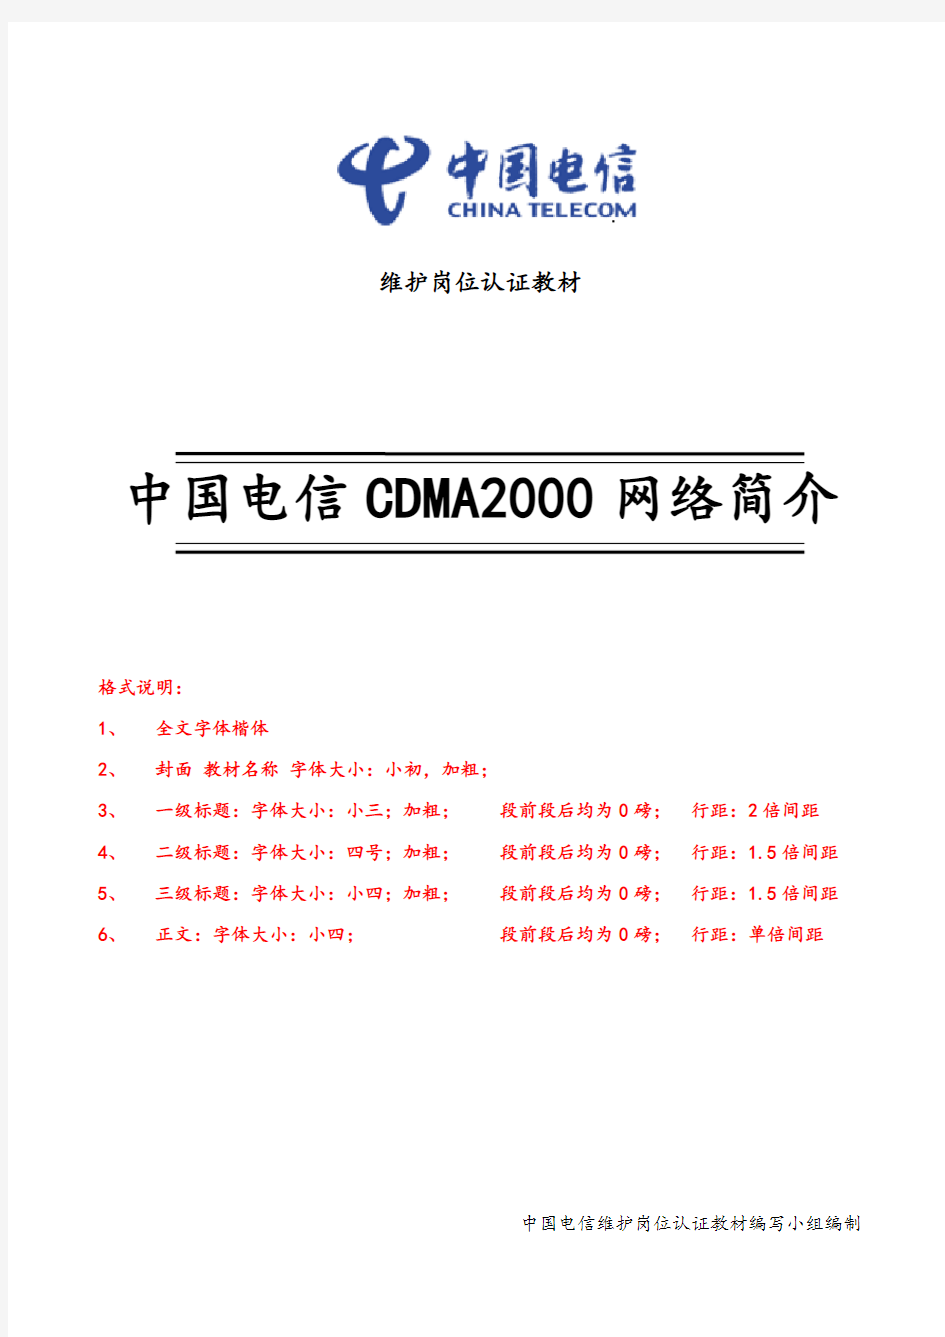 移动网网络架构与维护规范-中国电信CDMA2000网络简介